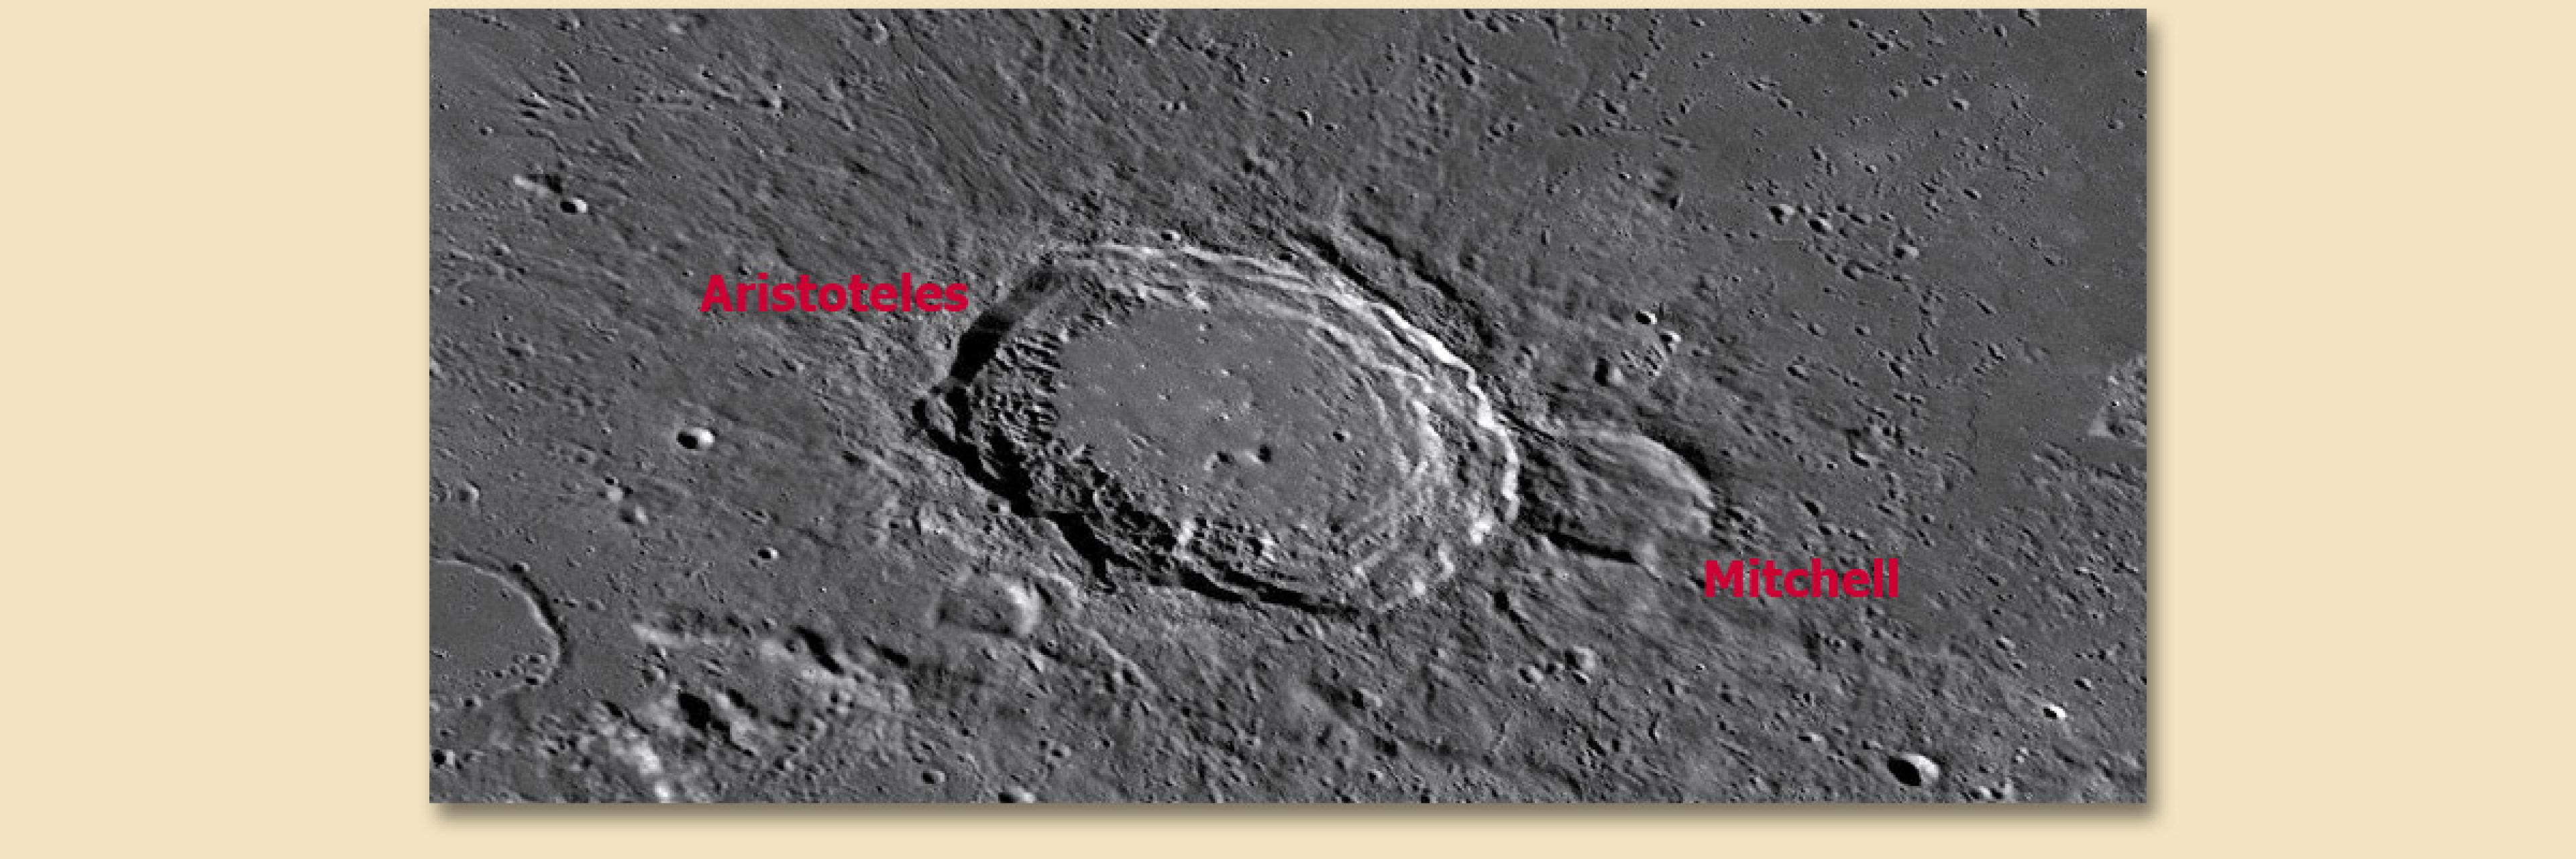 Einer der wenigen nach einer Frau benannten Mondkrater ist Mitchell, der sich an den größeren Aristoteles schmiegt – und älter ist als dieser.